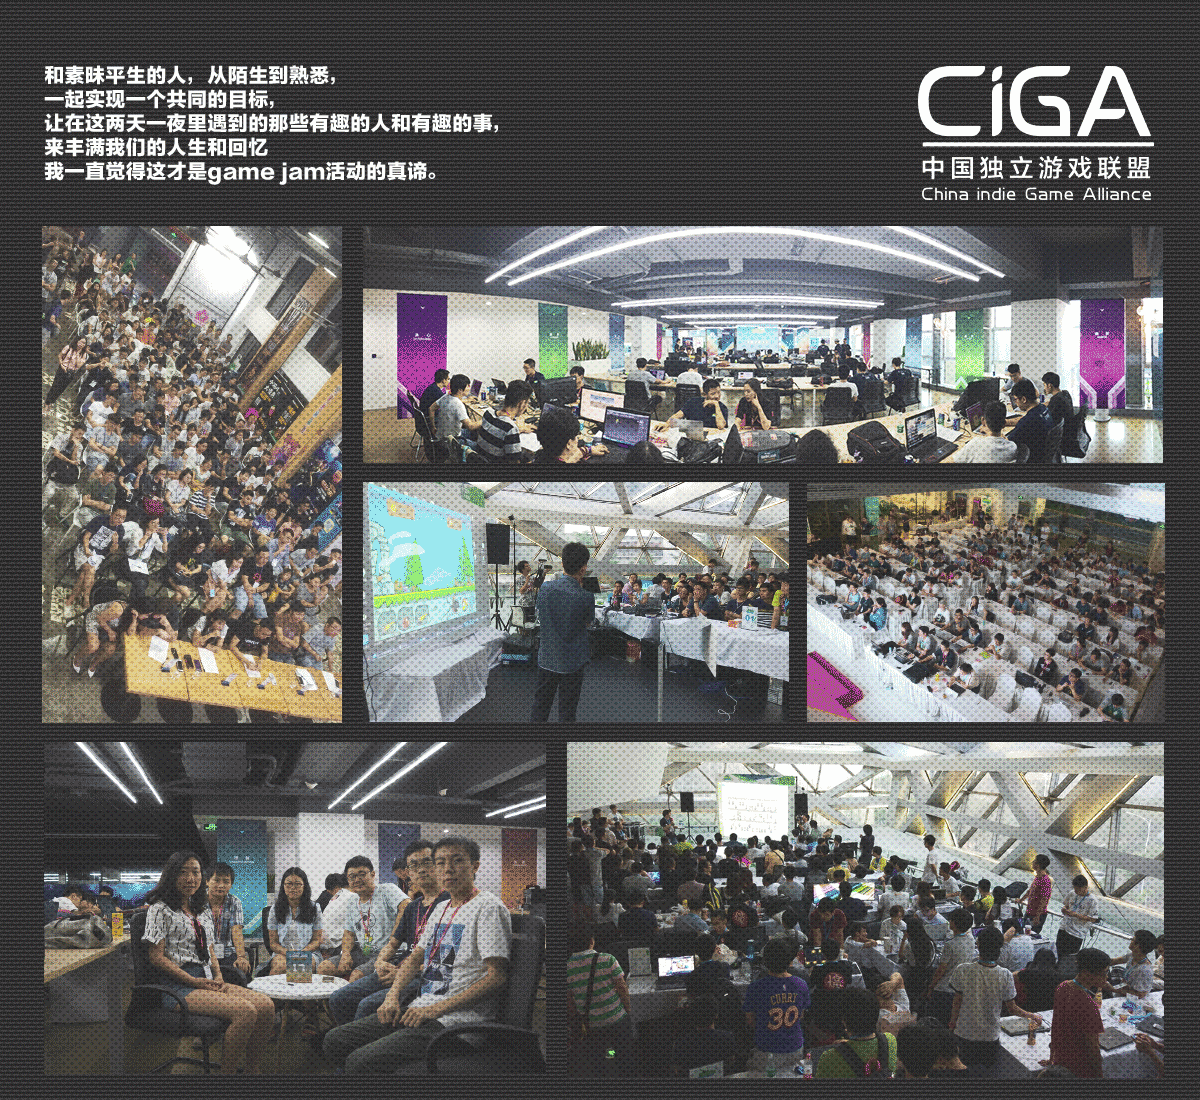 一起来感受极限游戏开发的魅力 CiGA Game Jam 2018报名正式开始